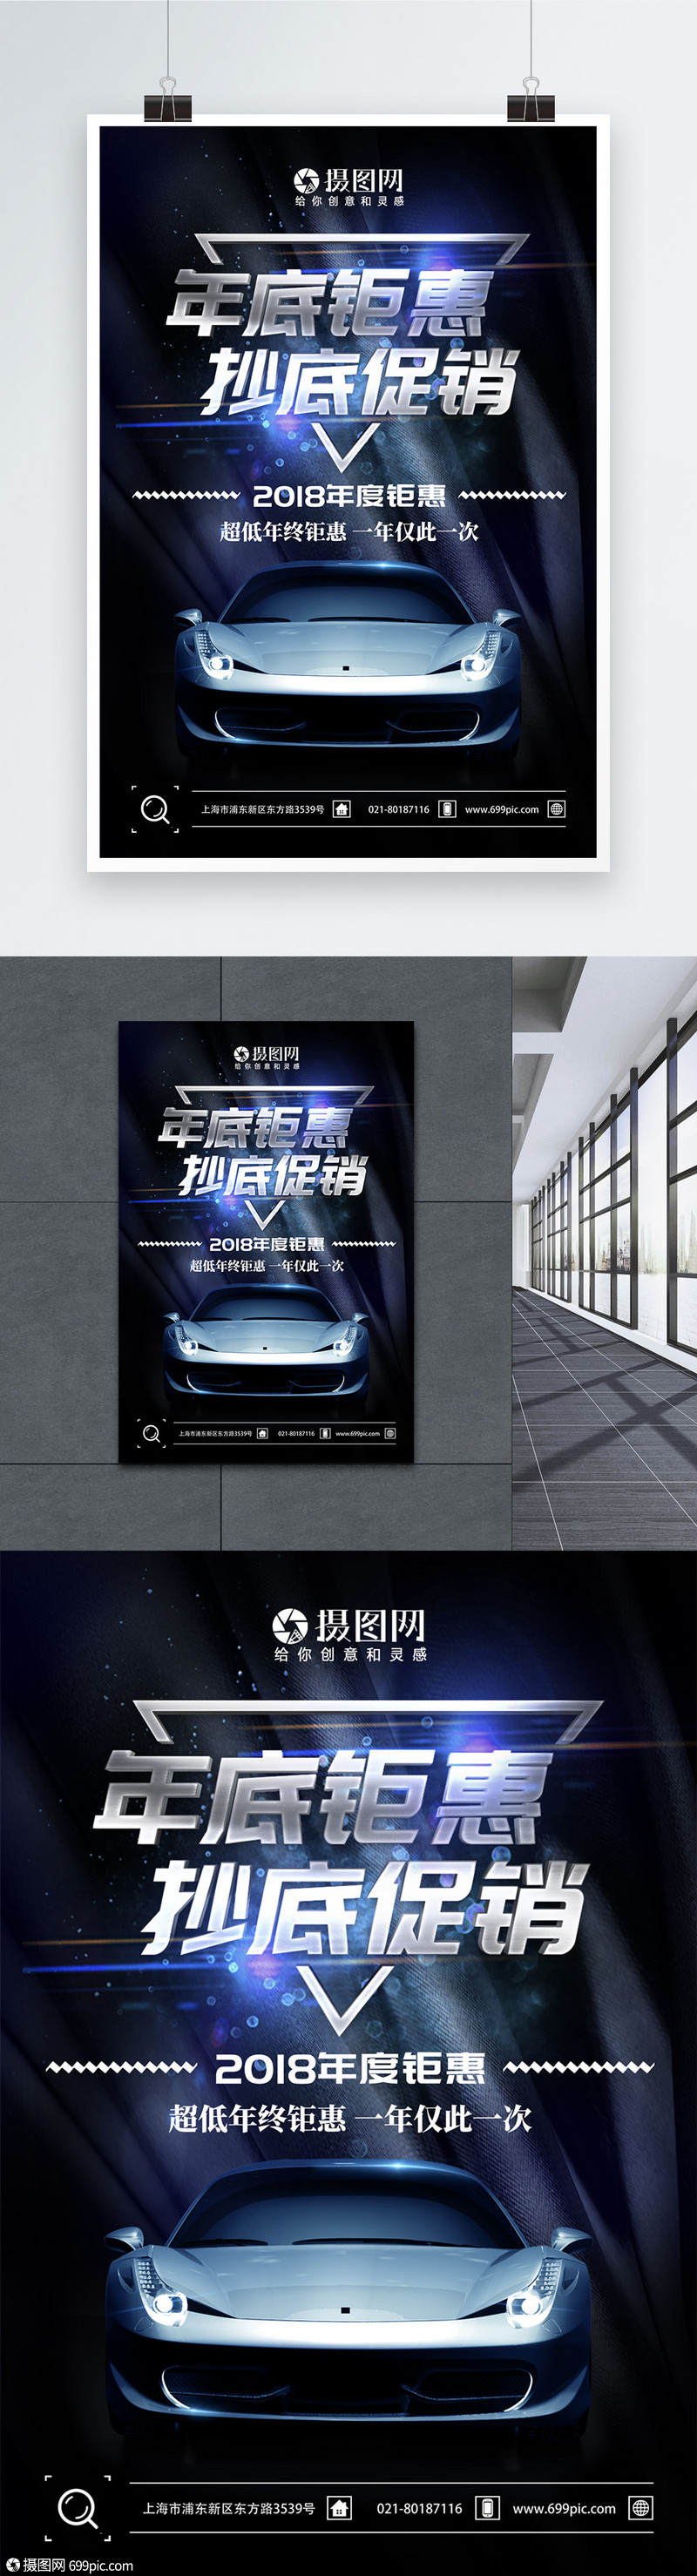 年底钜惠汽车促销宣传海报